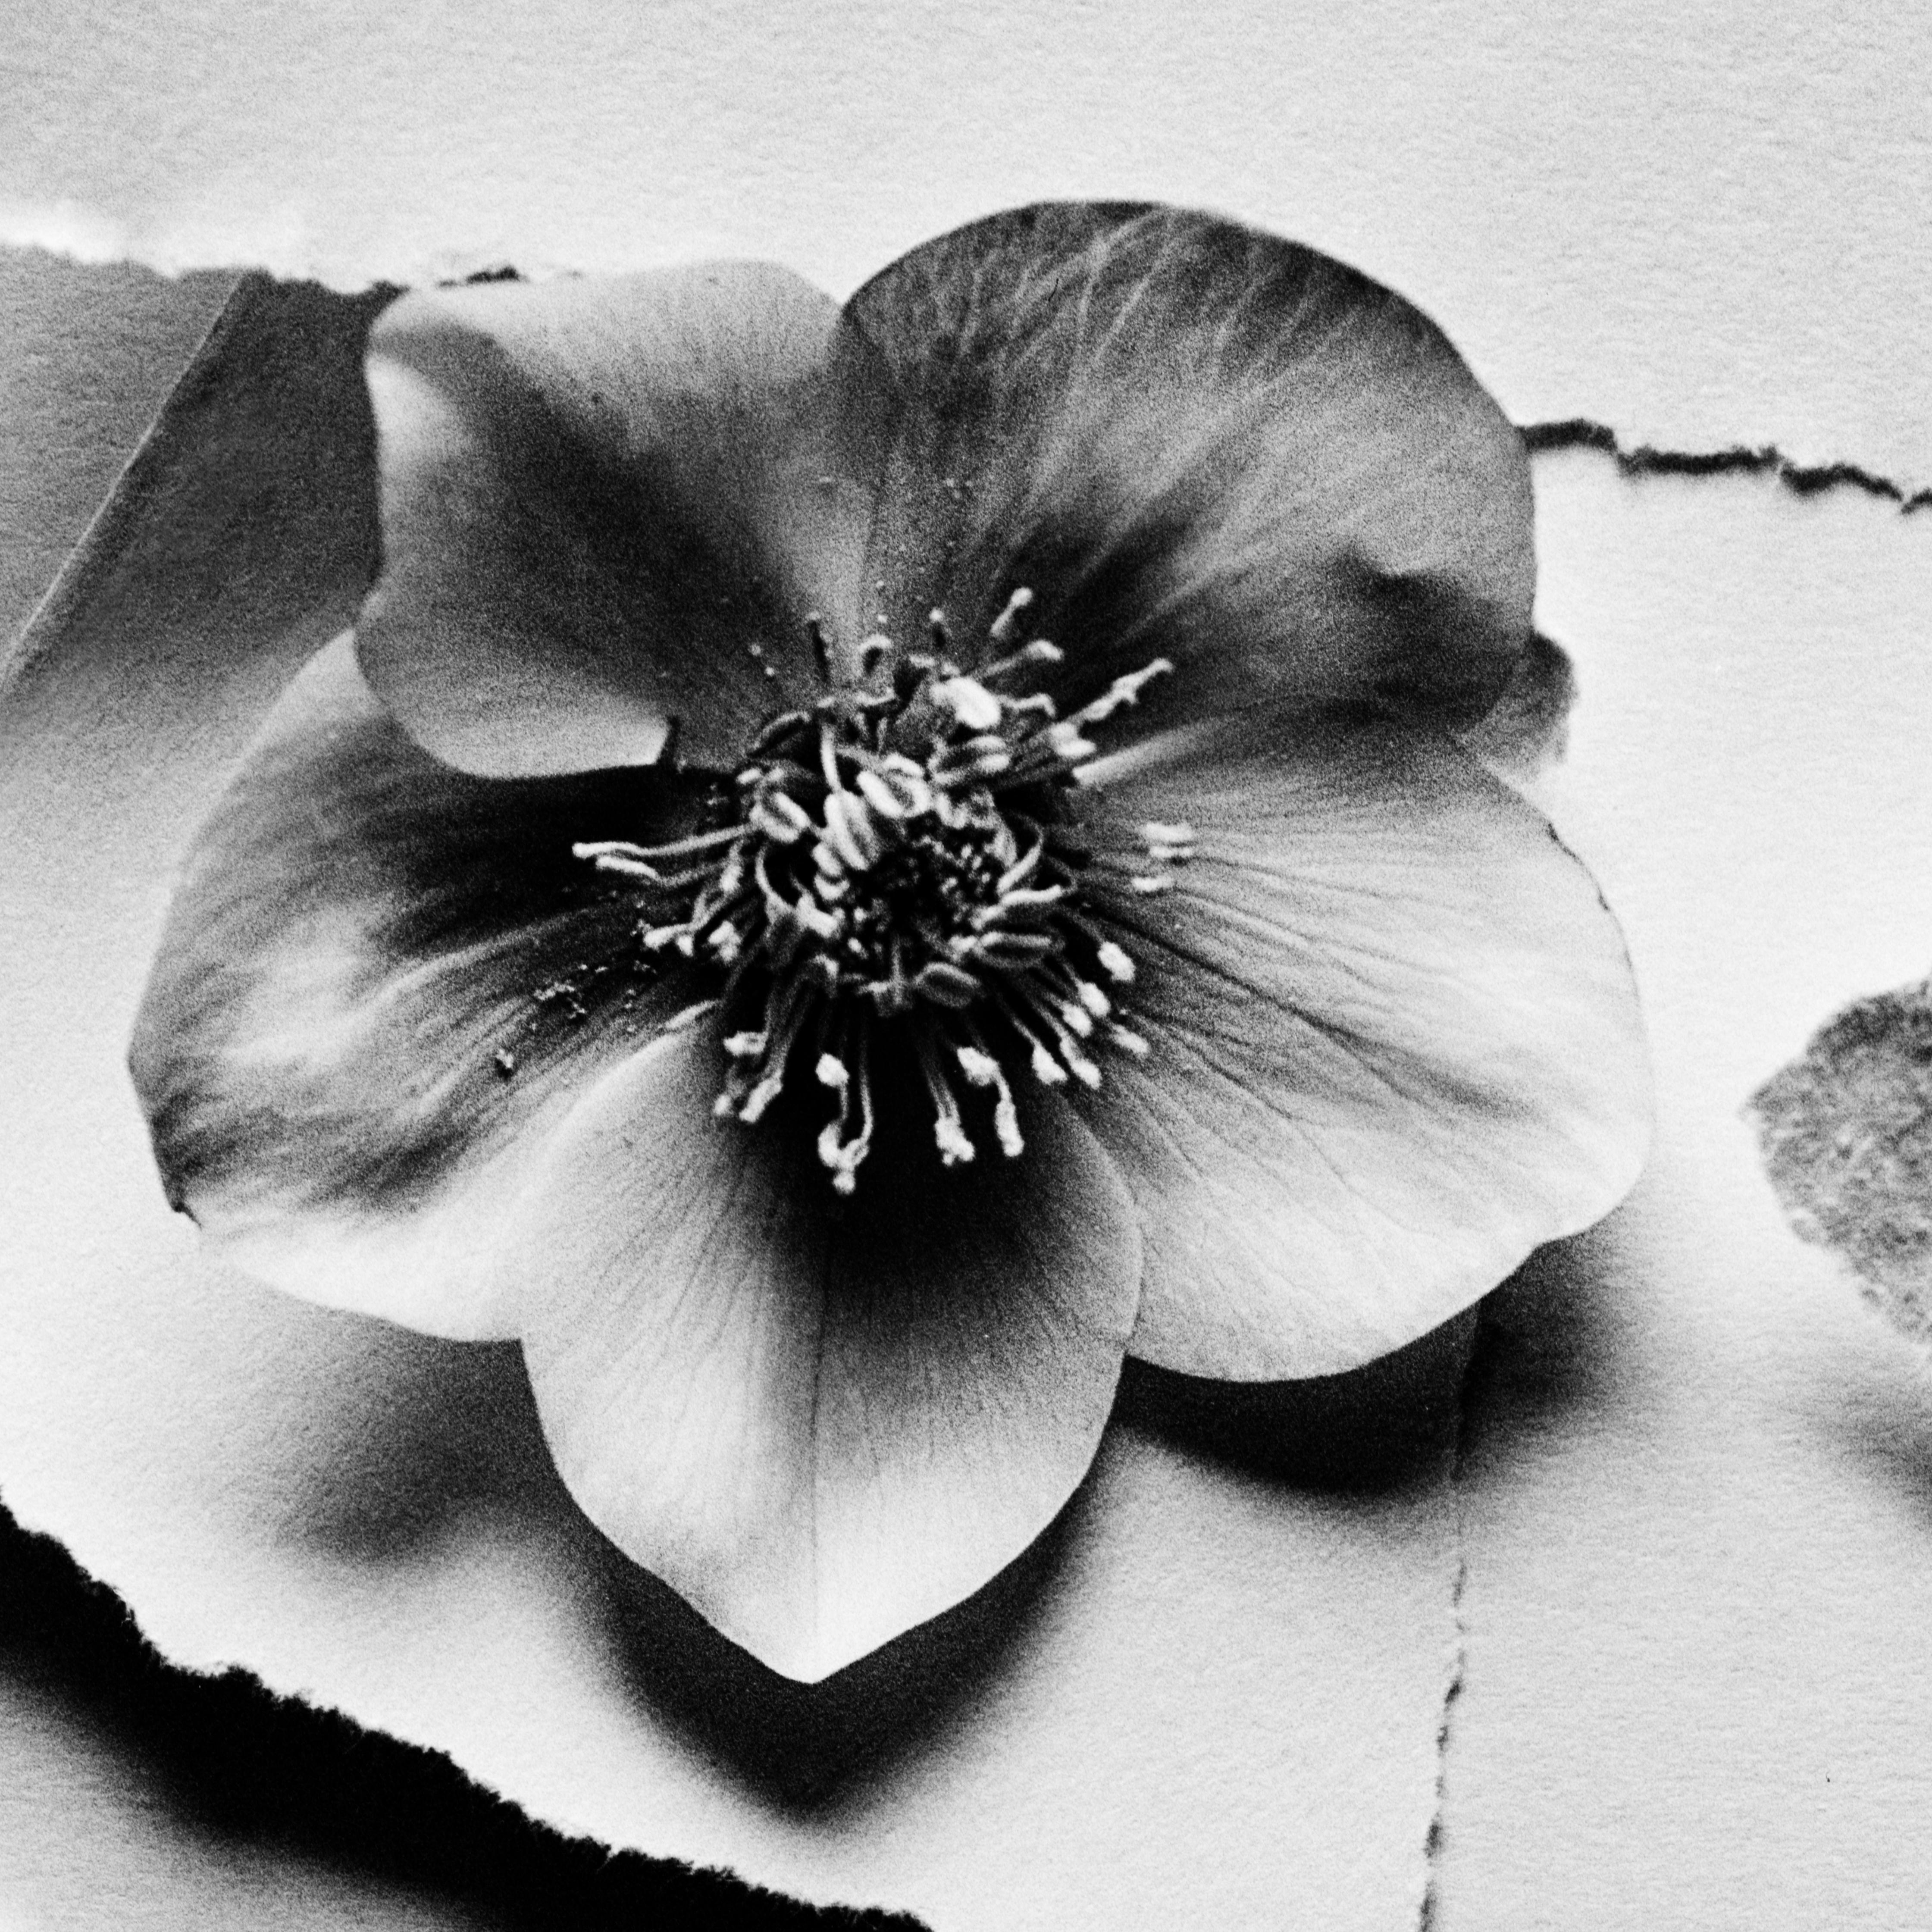 Schwarze Hellebore-Blumenfotografie in Schwarz-Weiß, limitierte Auflage von 10 Stück (Zeitgenössisch), Photograph, von Ugne Pouwell